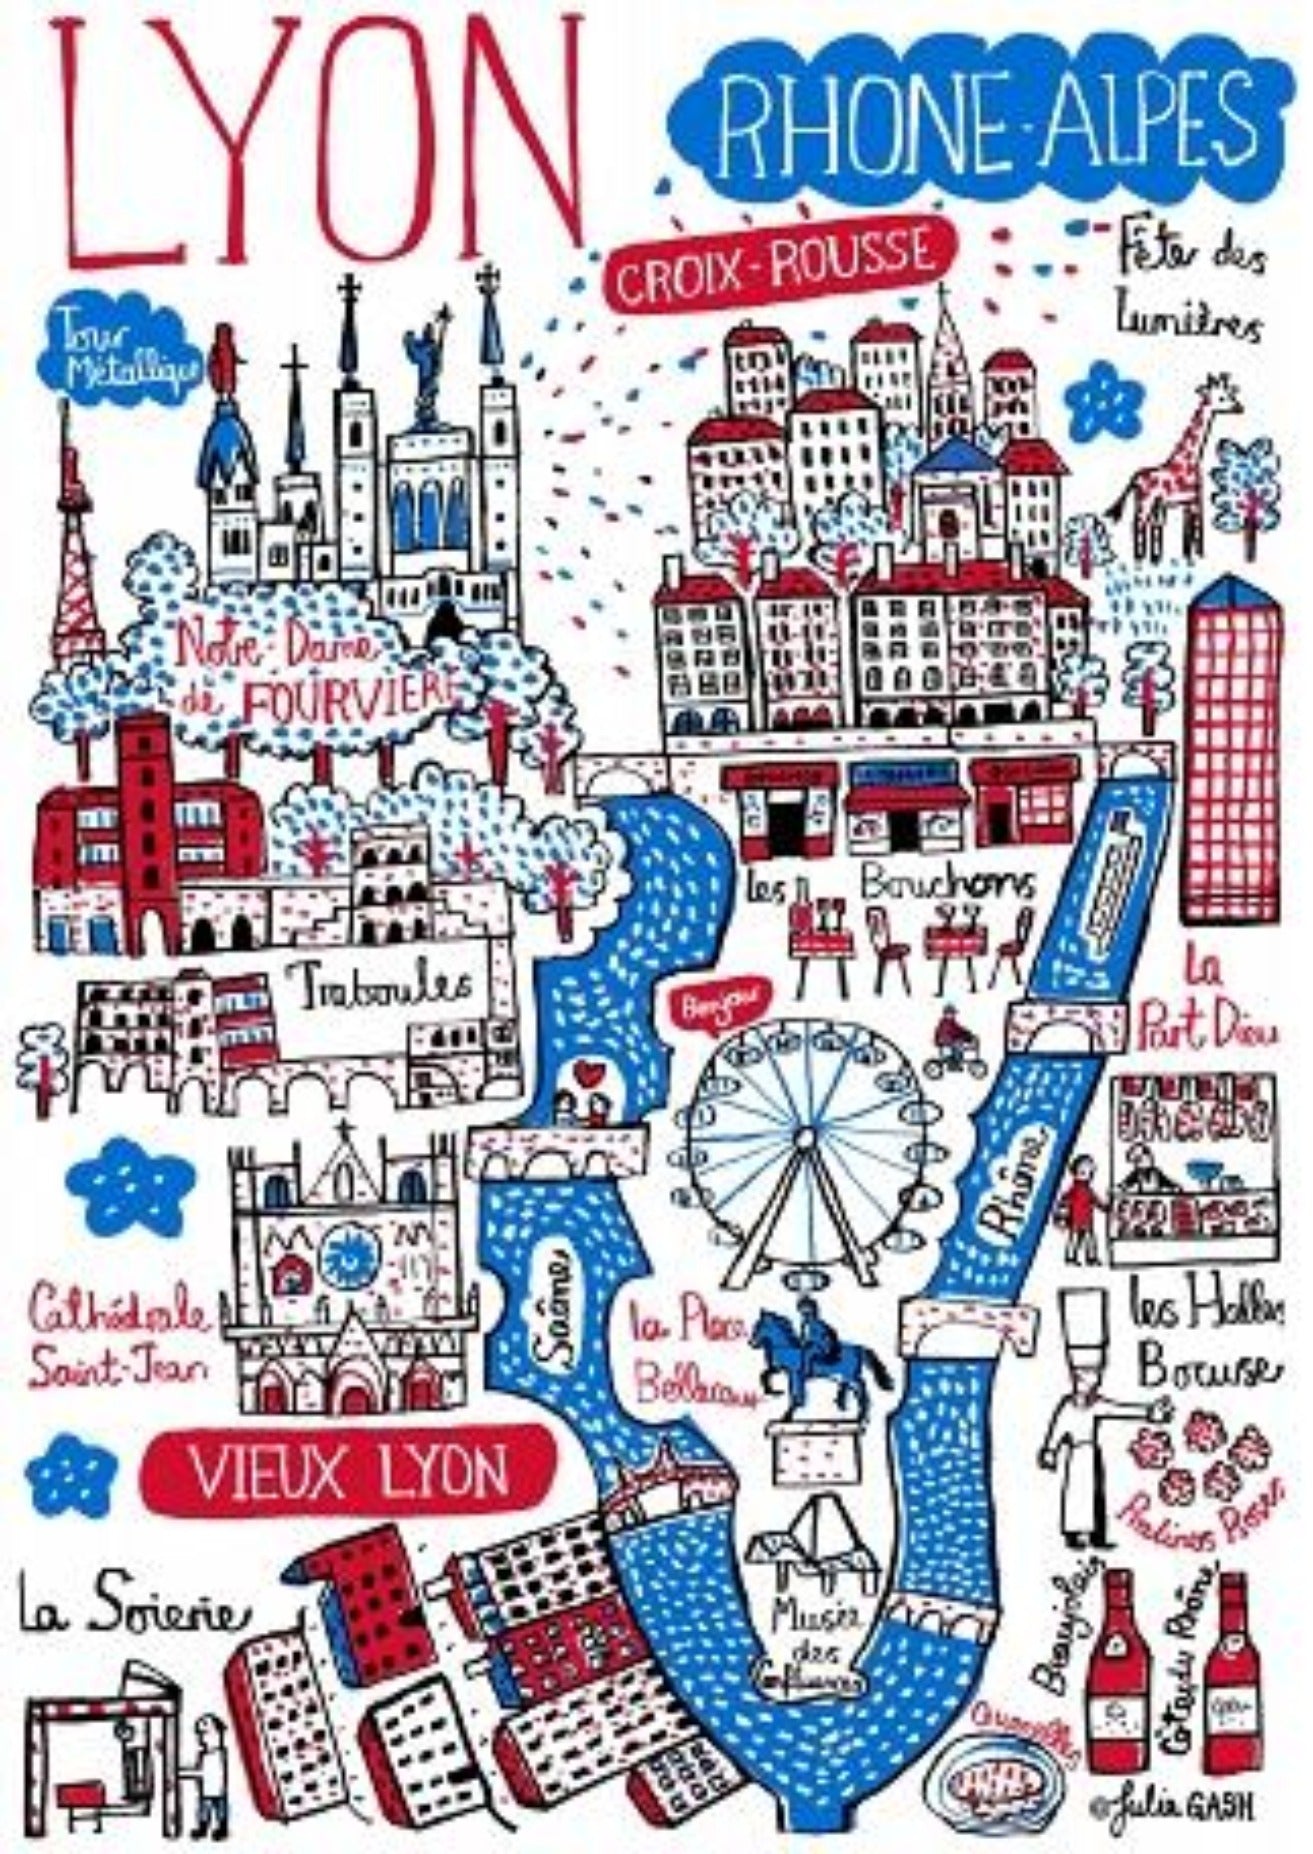 Lyon Notre Dame  Art Print - Julia Gash